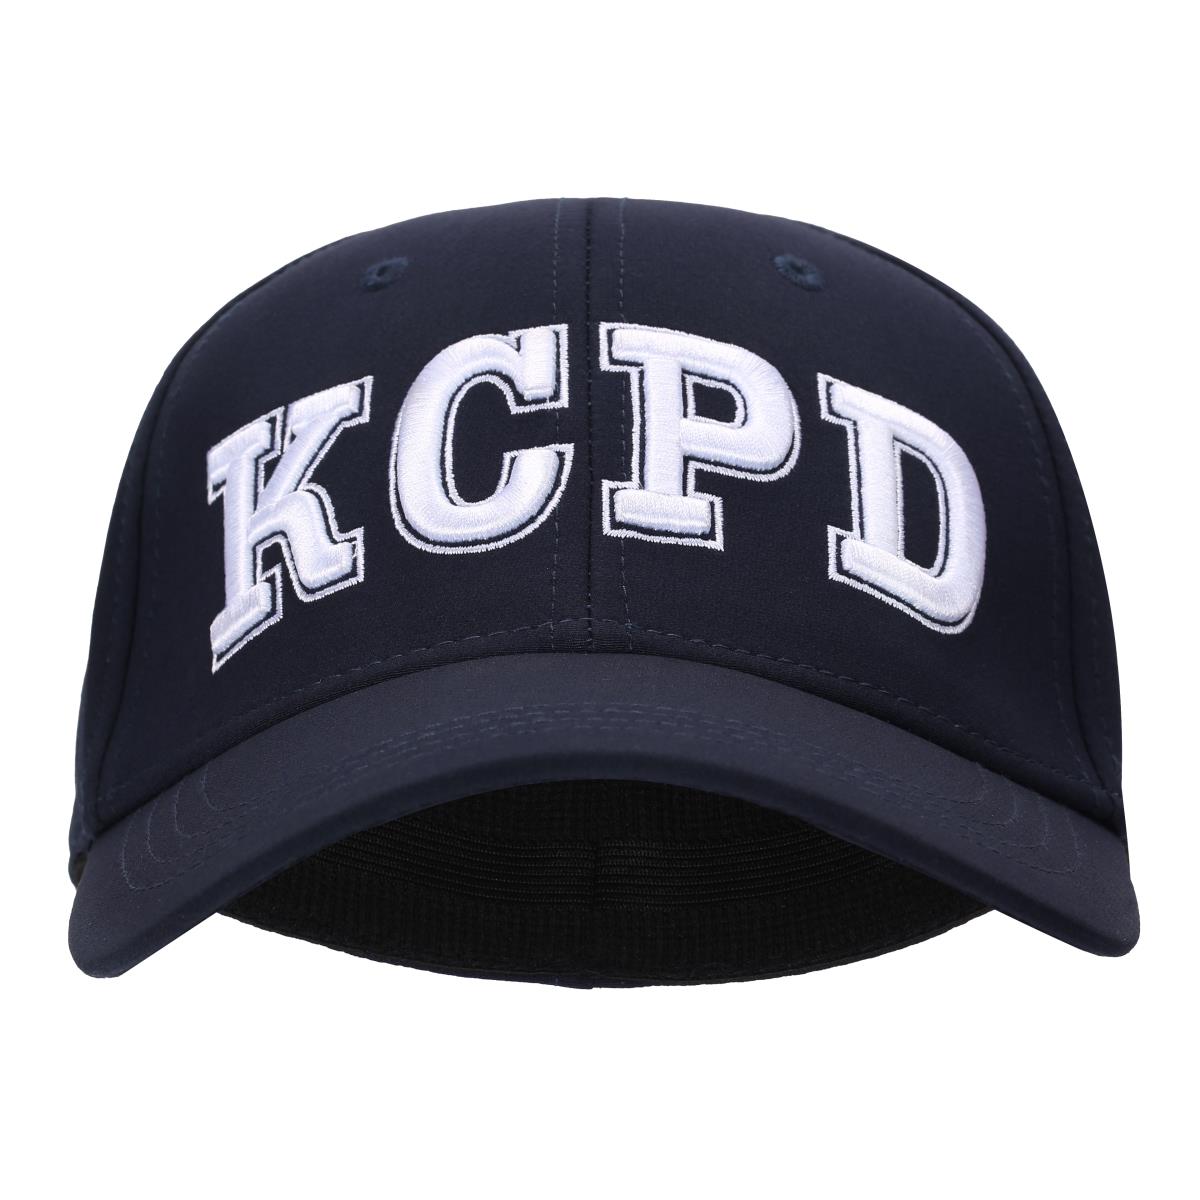 彈力休閒帽-KCPD-99927-3,佳豐有限公司